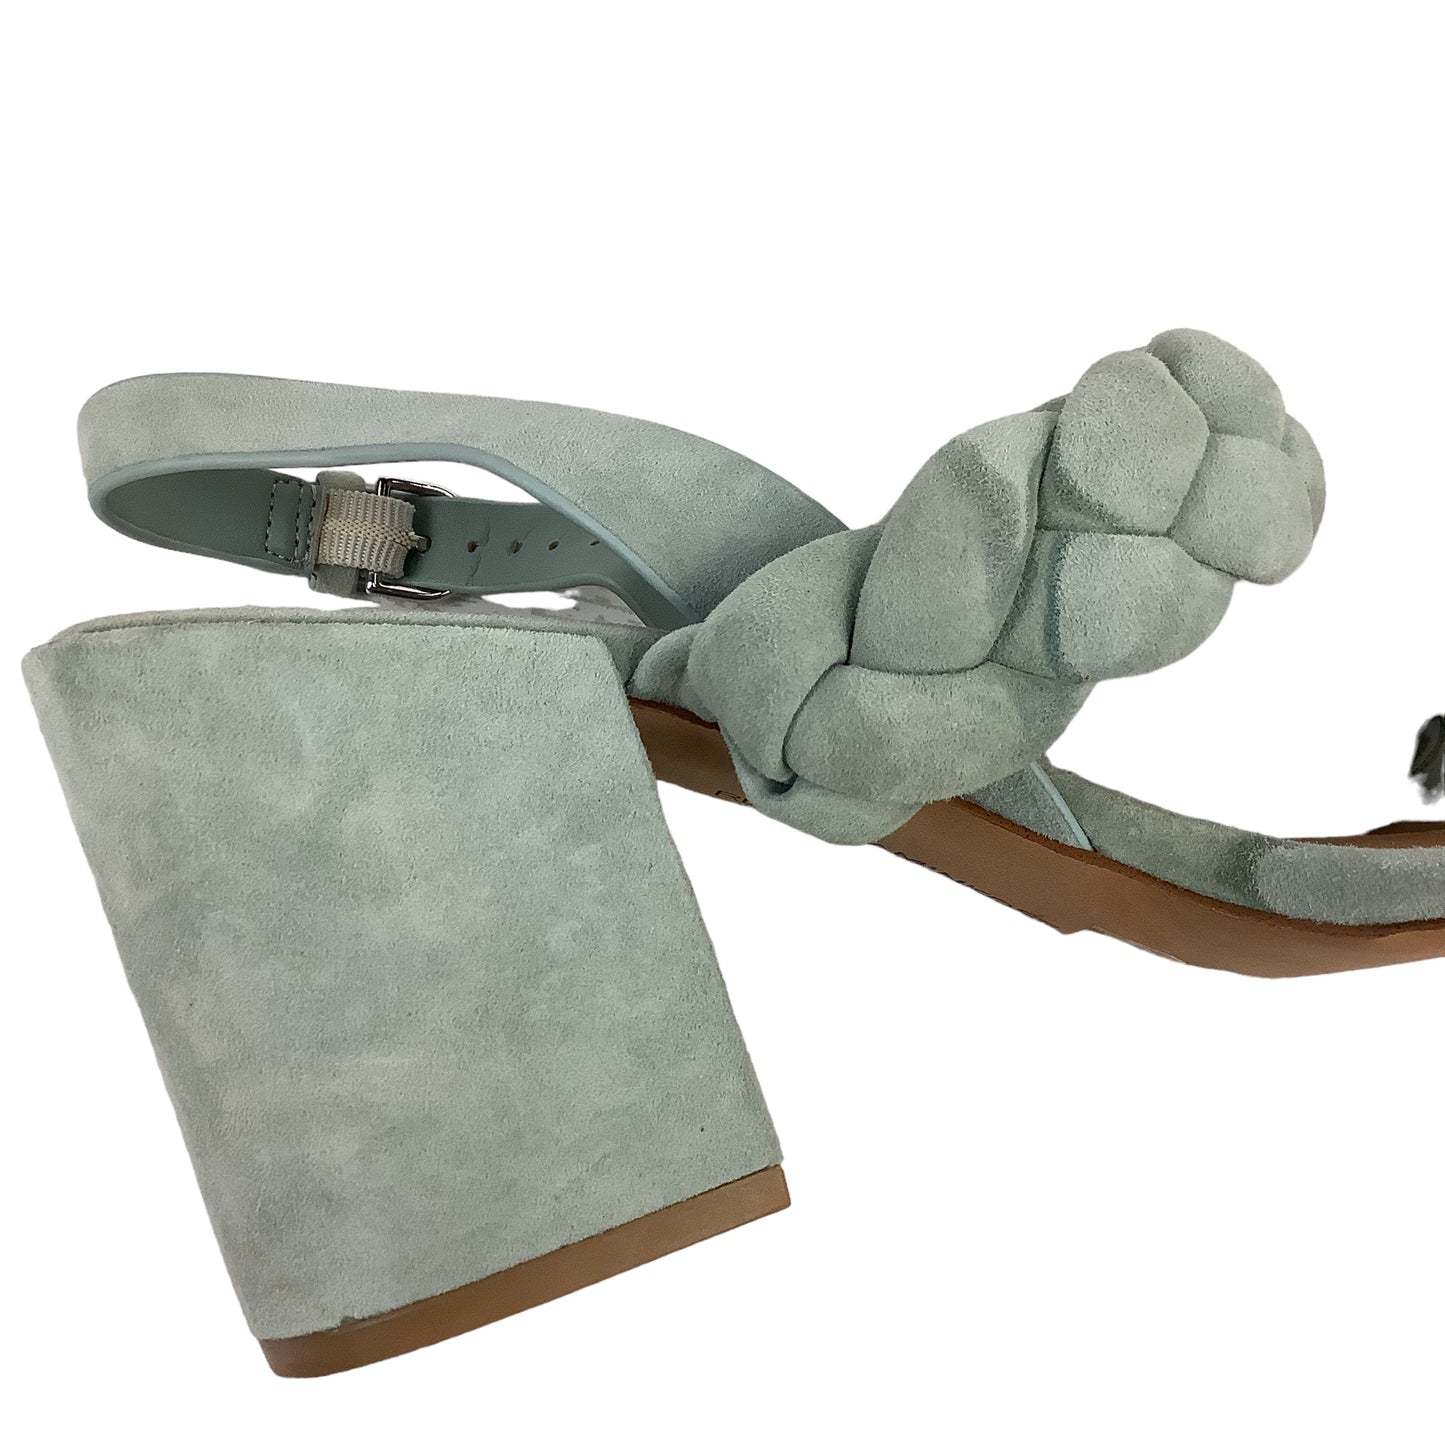 Sandals Designer By Rebecca Minkoff  Size: 10.5